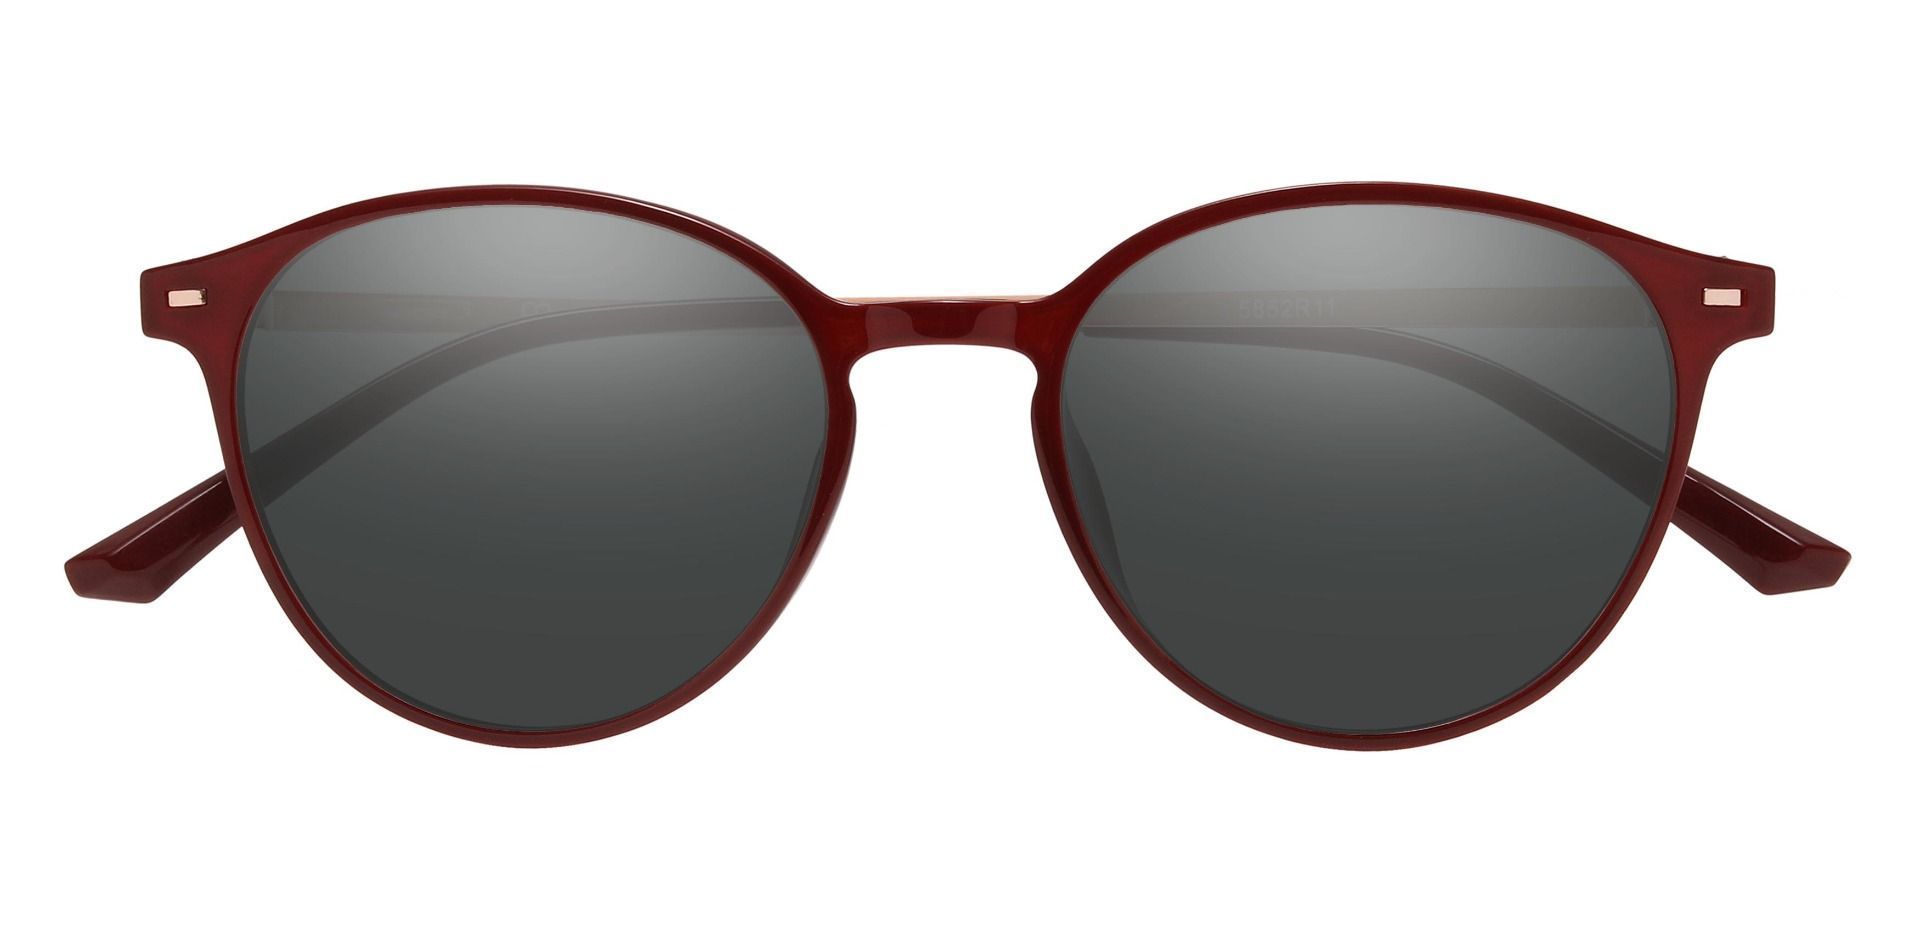 Springer Round Progressive Sunglasses - Red Frame With Gray Lenses